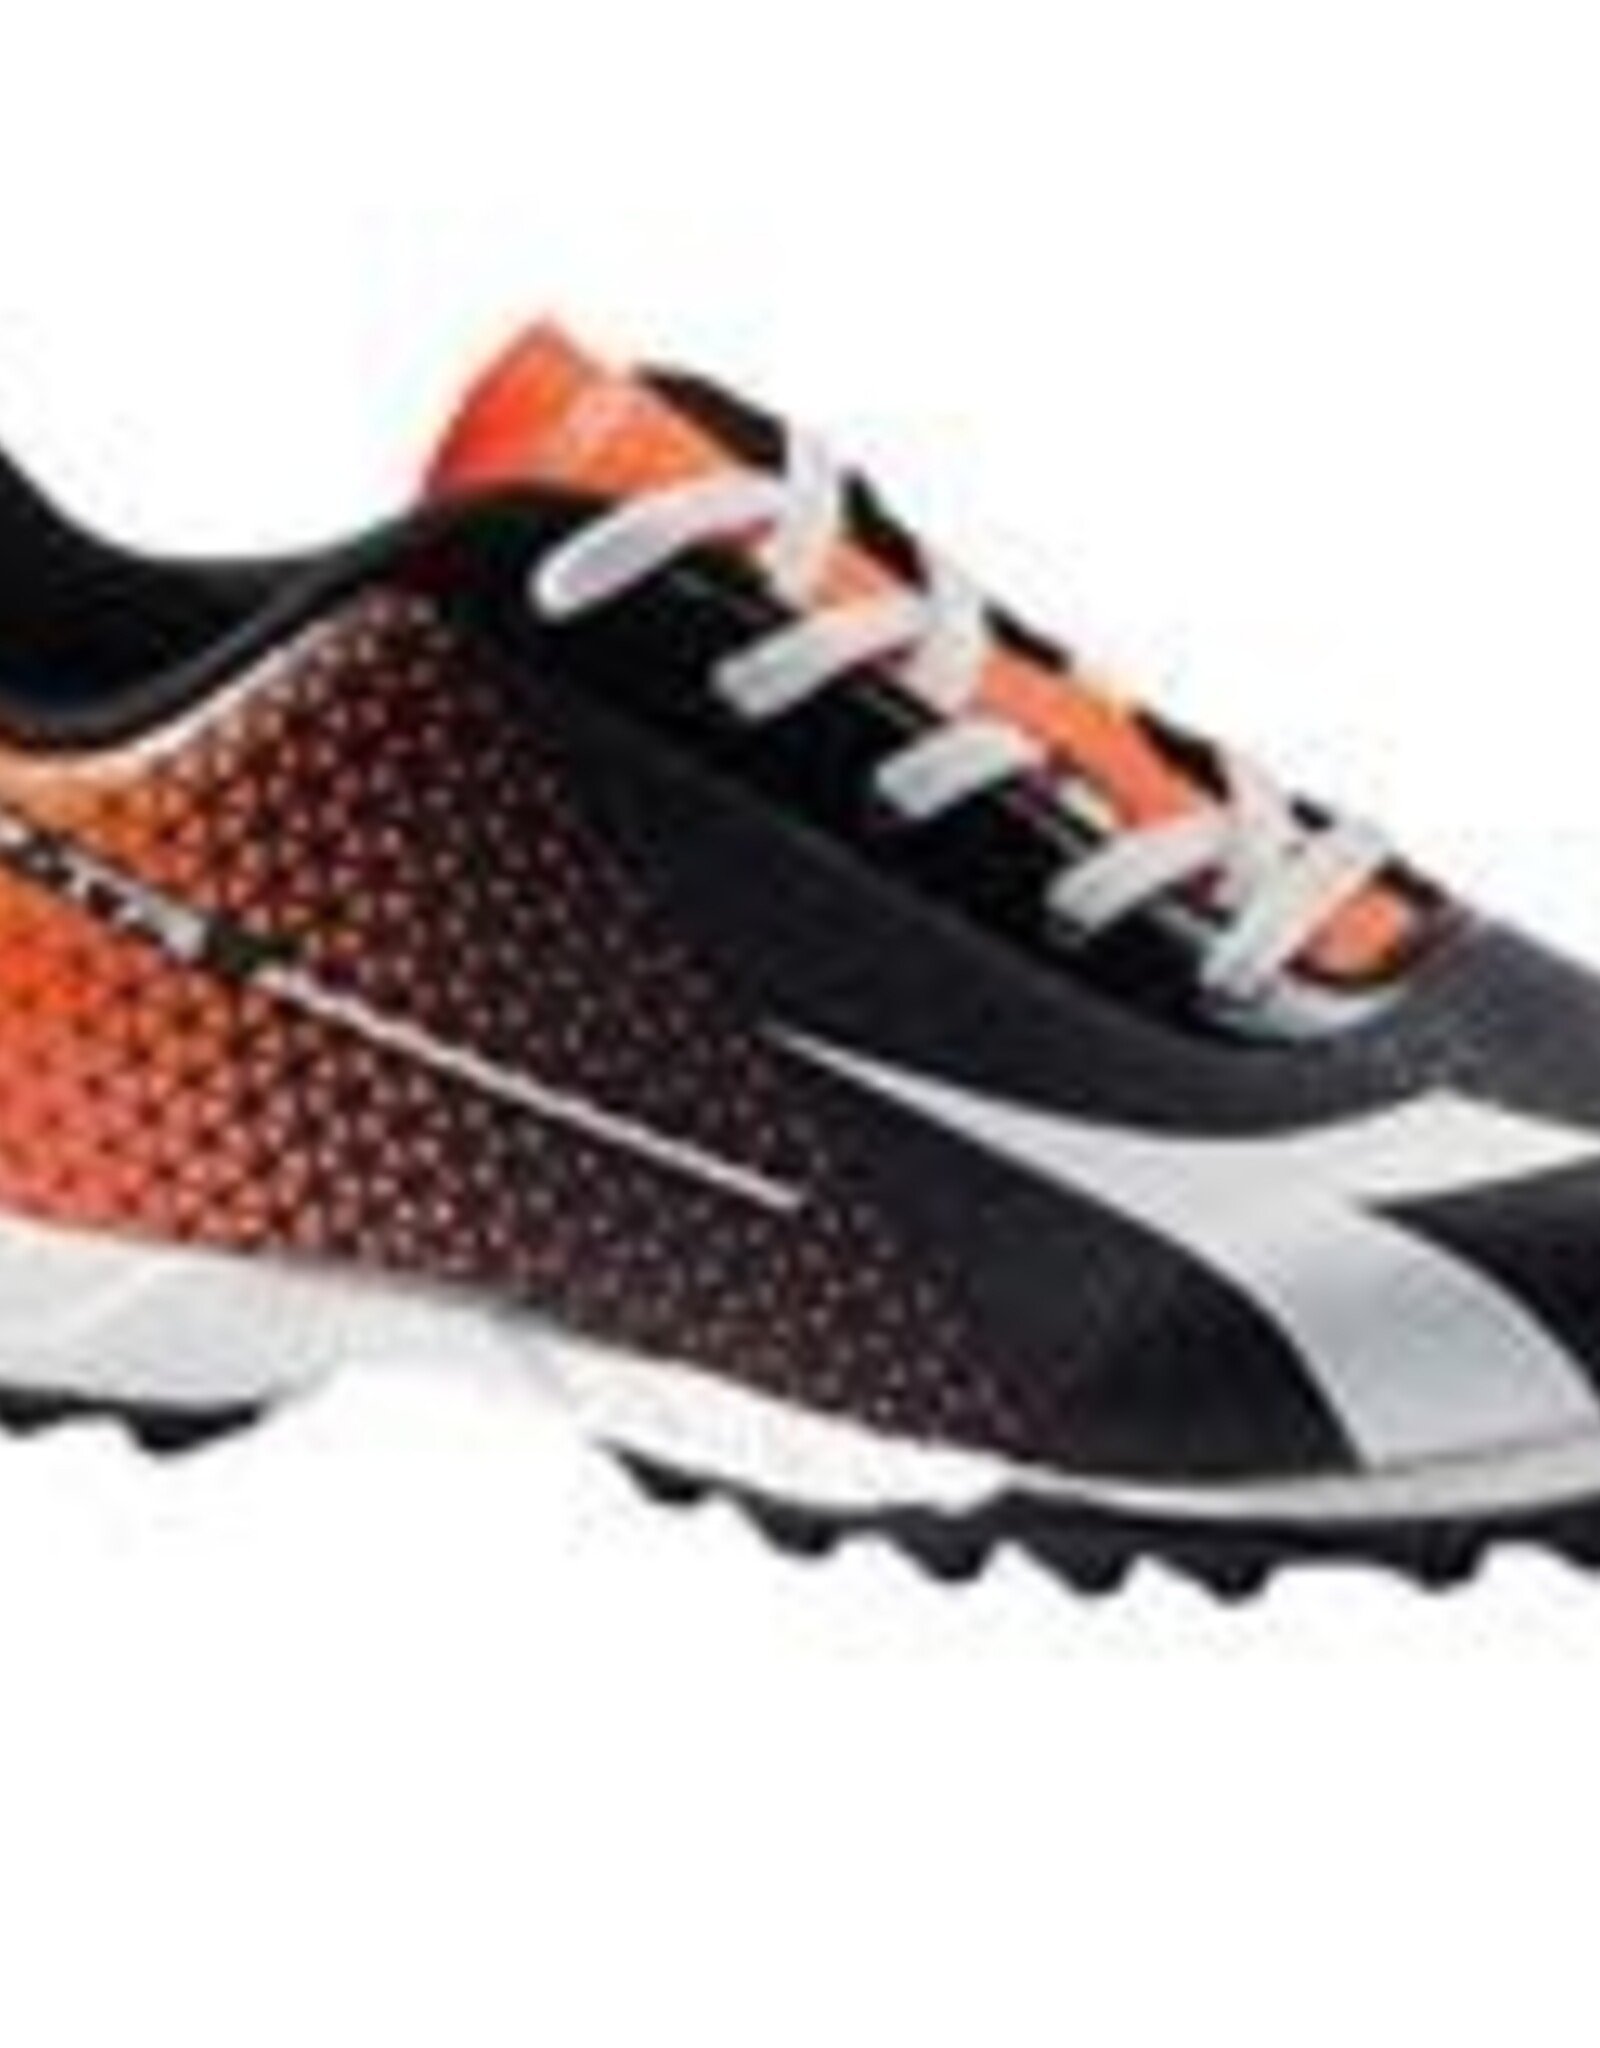 Diadora Soccer Footwear 7-tri TF Jr. size:4.5